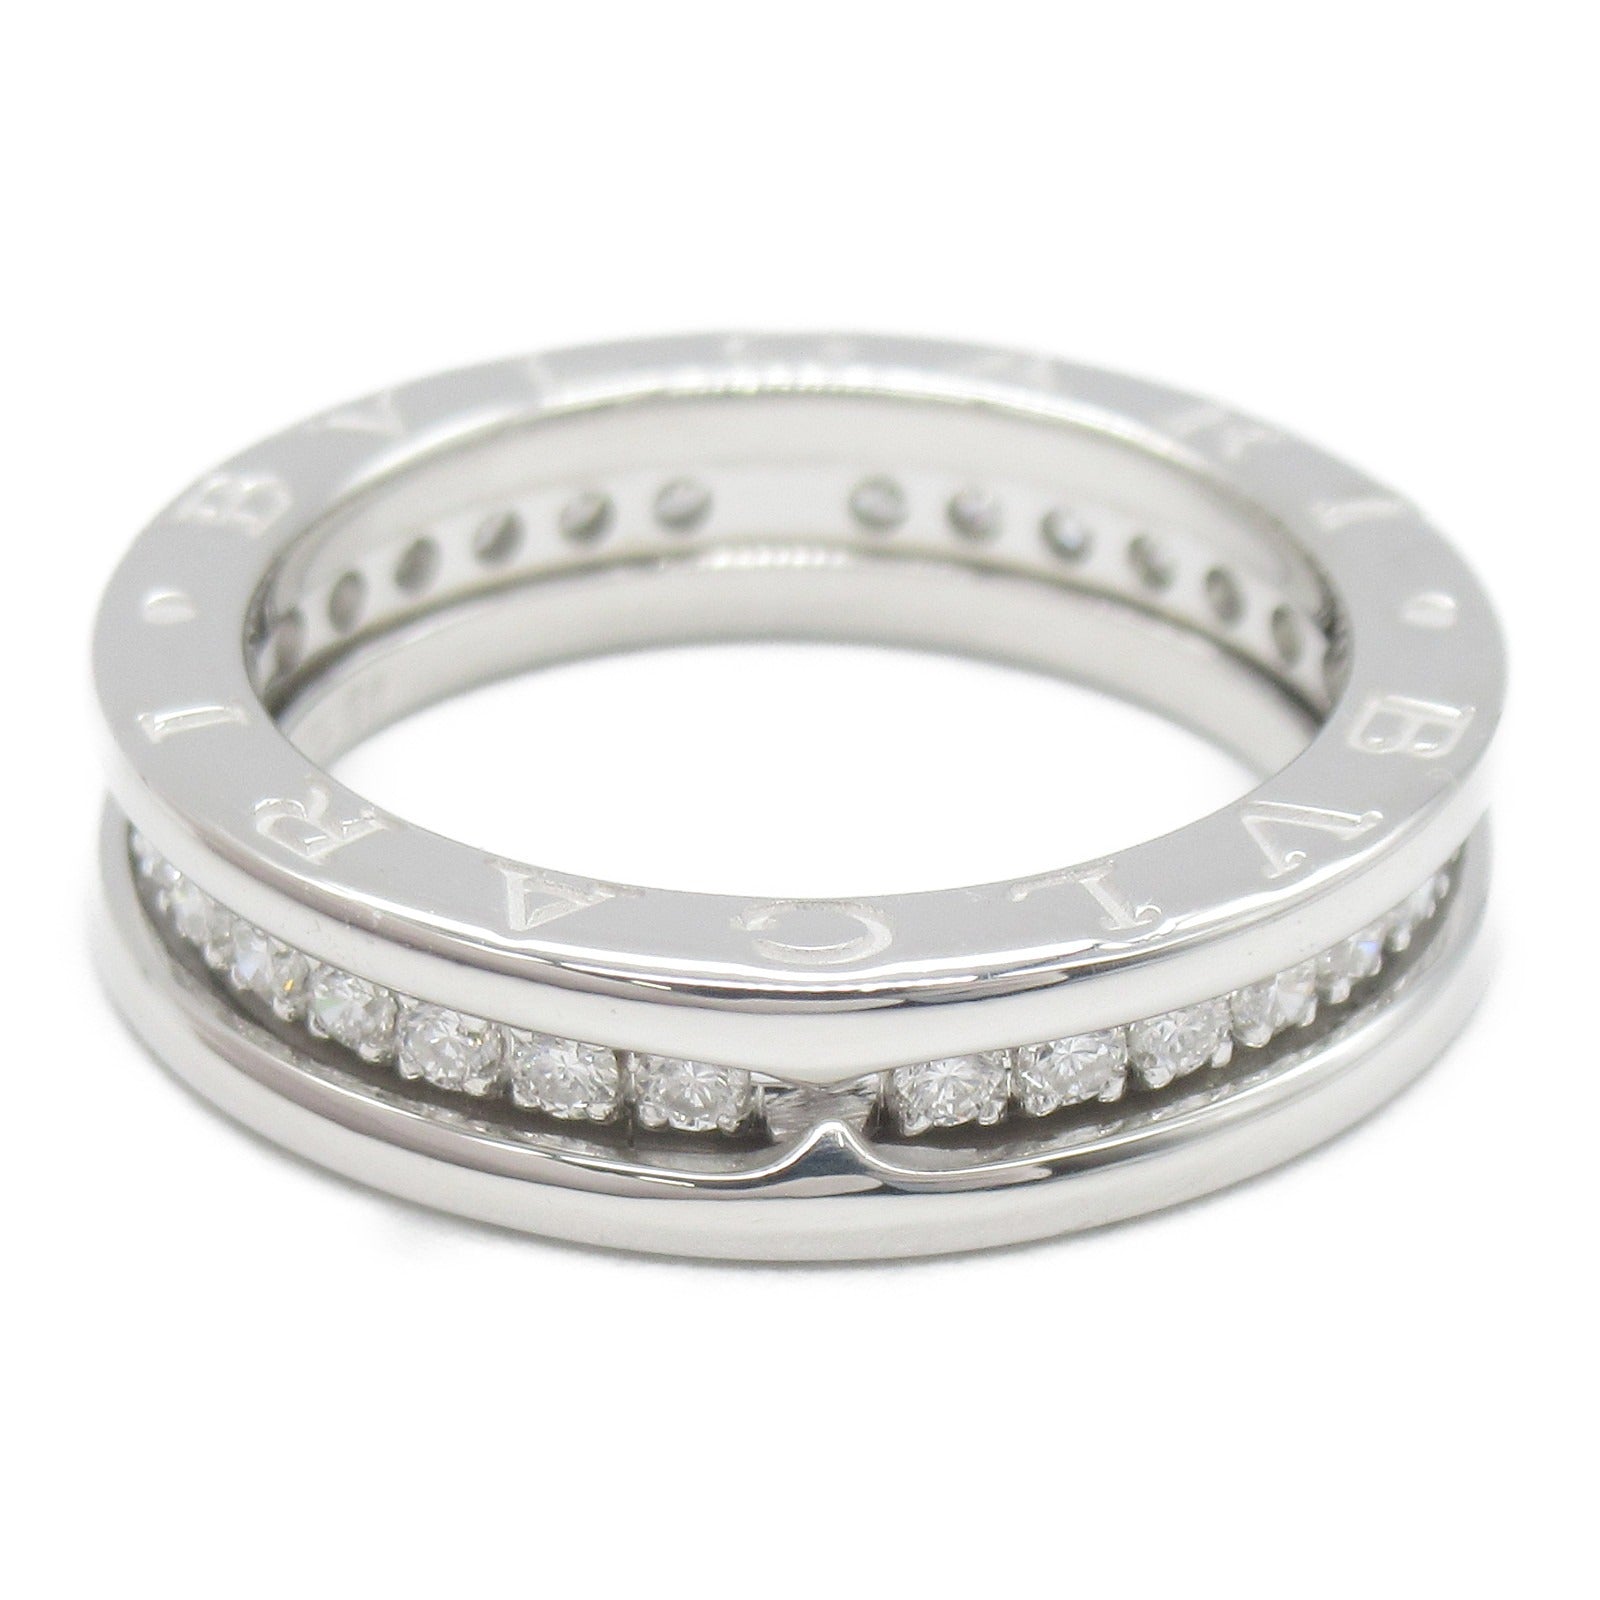 Bulgari BVLGARI B-zero1 Beezero One Ring Full Diamond Ring Ring Jewelry K18WG (White G) Diamond   Clearance